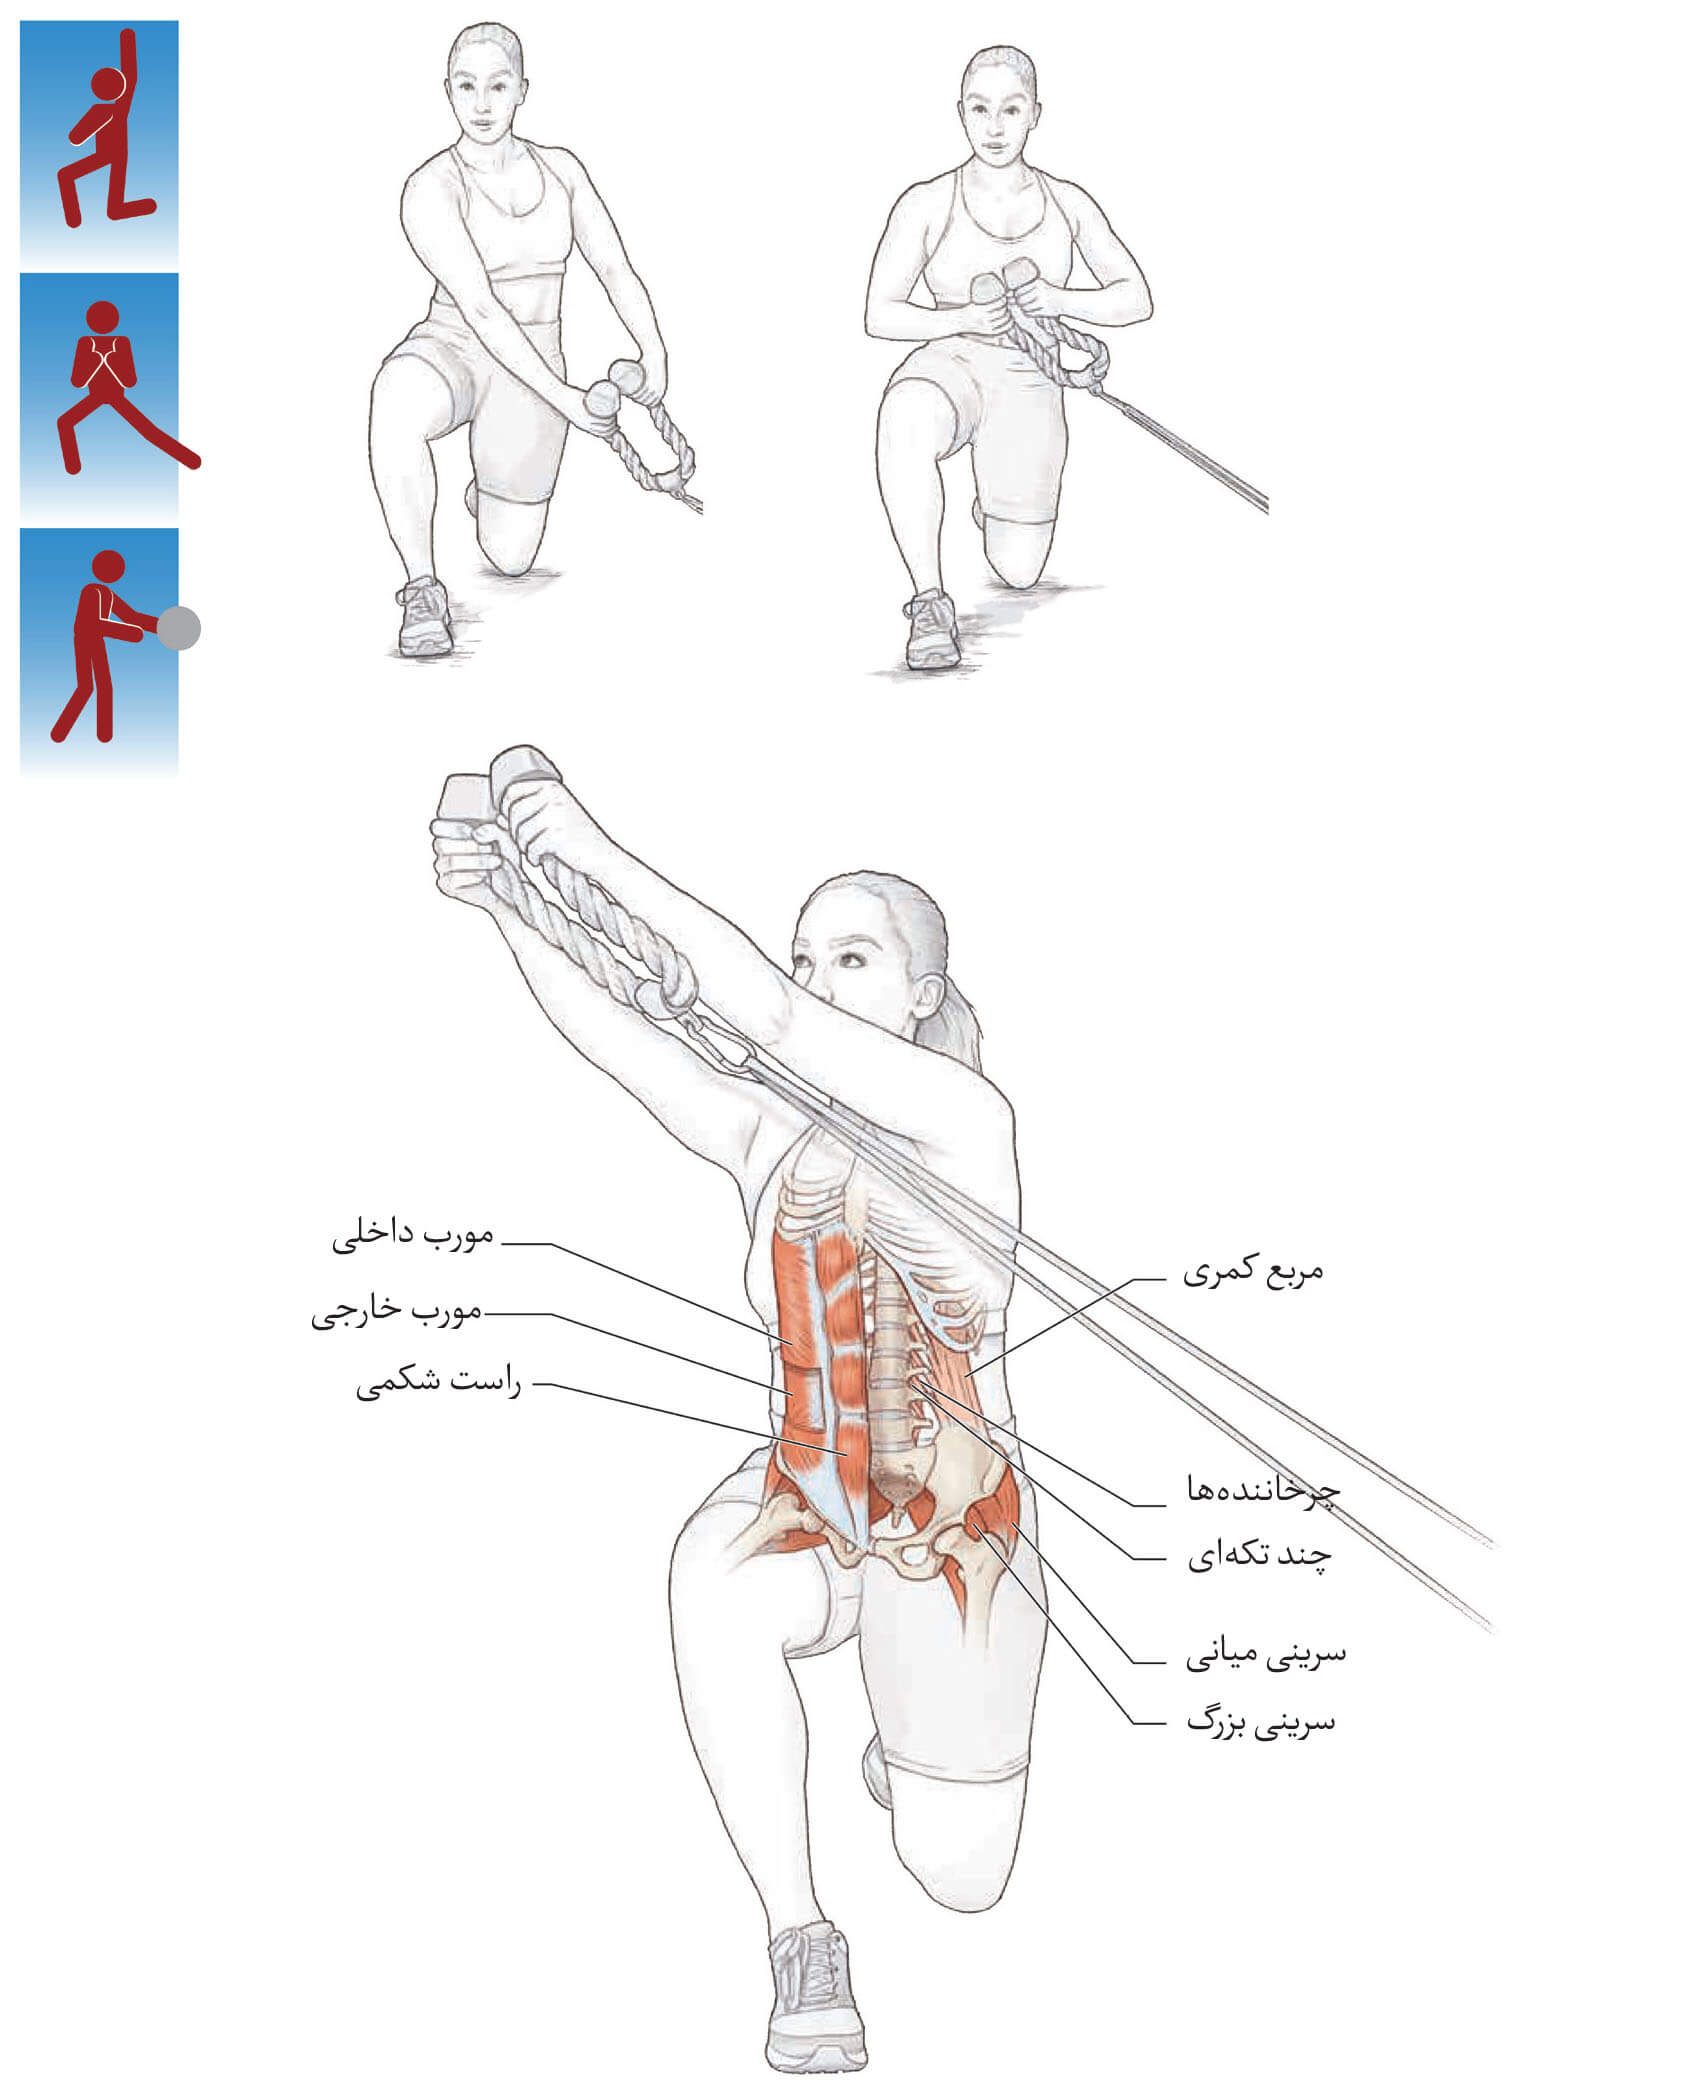 تمرینات ضد عضلات مرکزی | تمرینات مرکزی